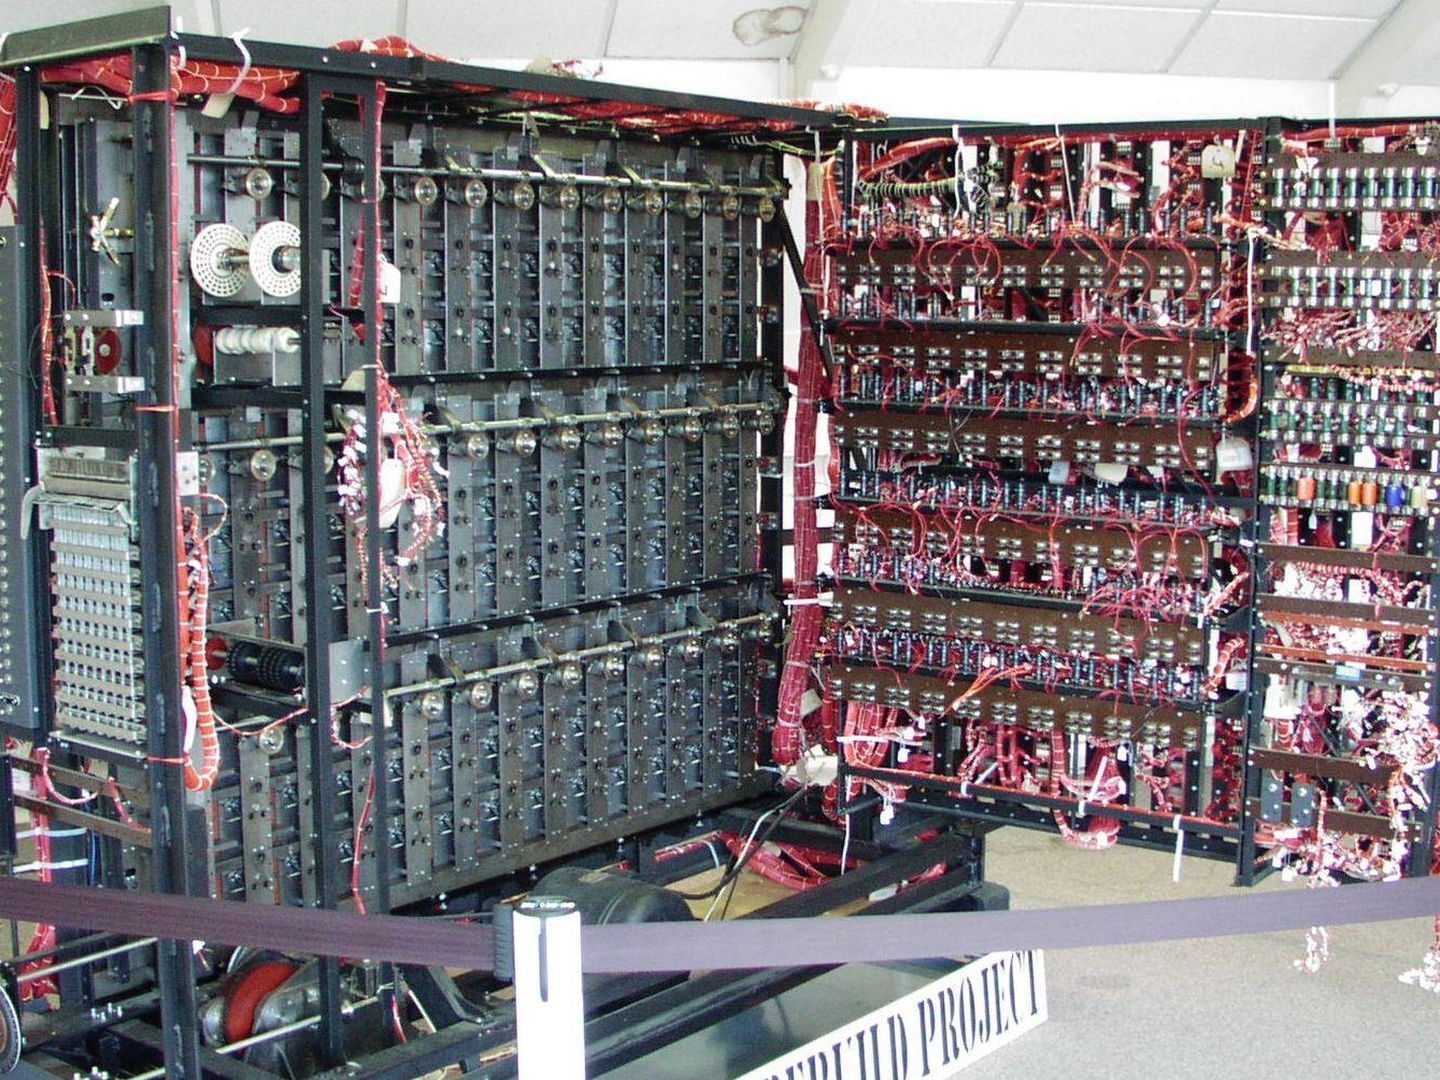 Bombe, 'réplica' del funcionamiento de Enigma, creado por Turing. 